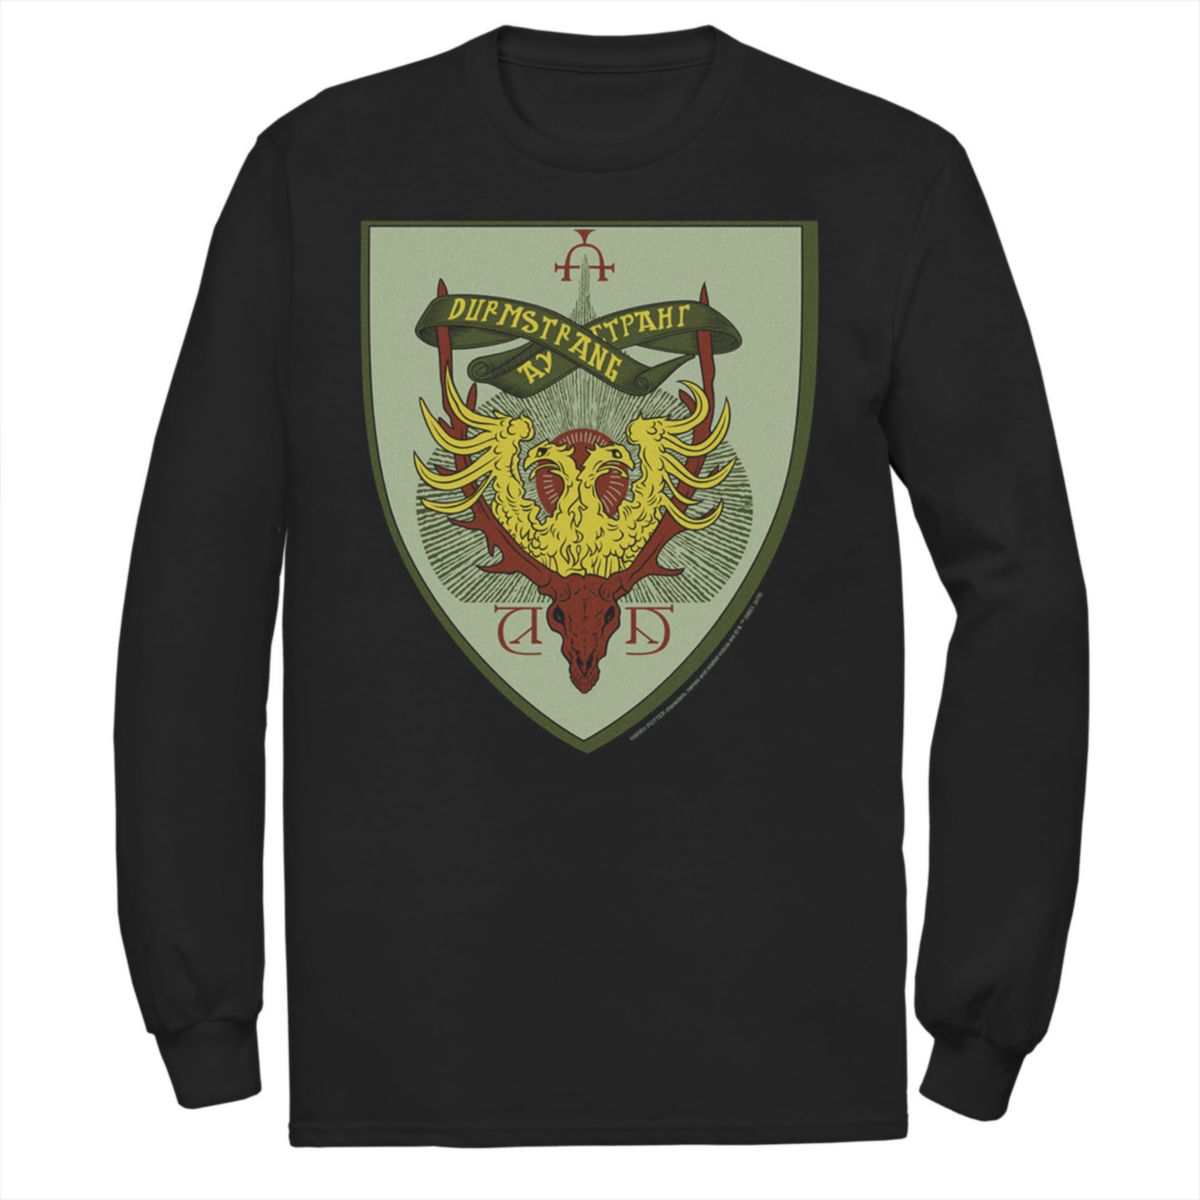 Мужская футболка с графическим принтом Harry Potter Durmstrang Crest с длинным рукавом Harry Potter